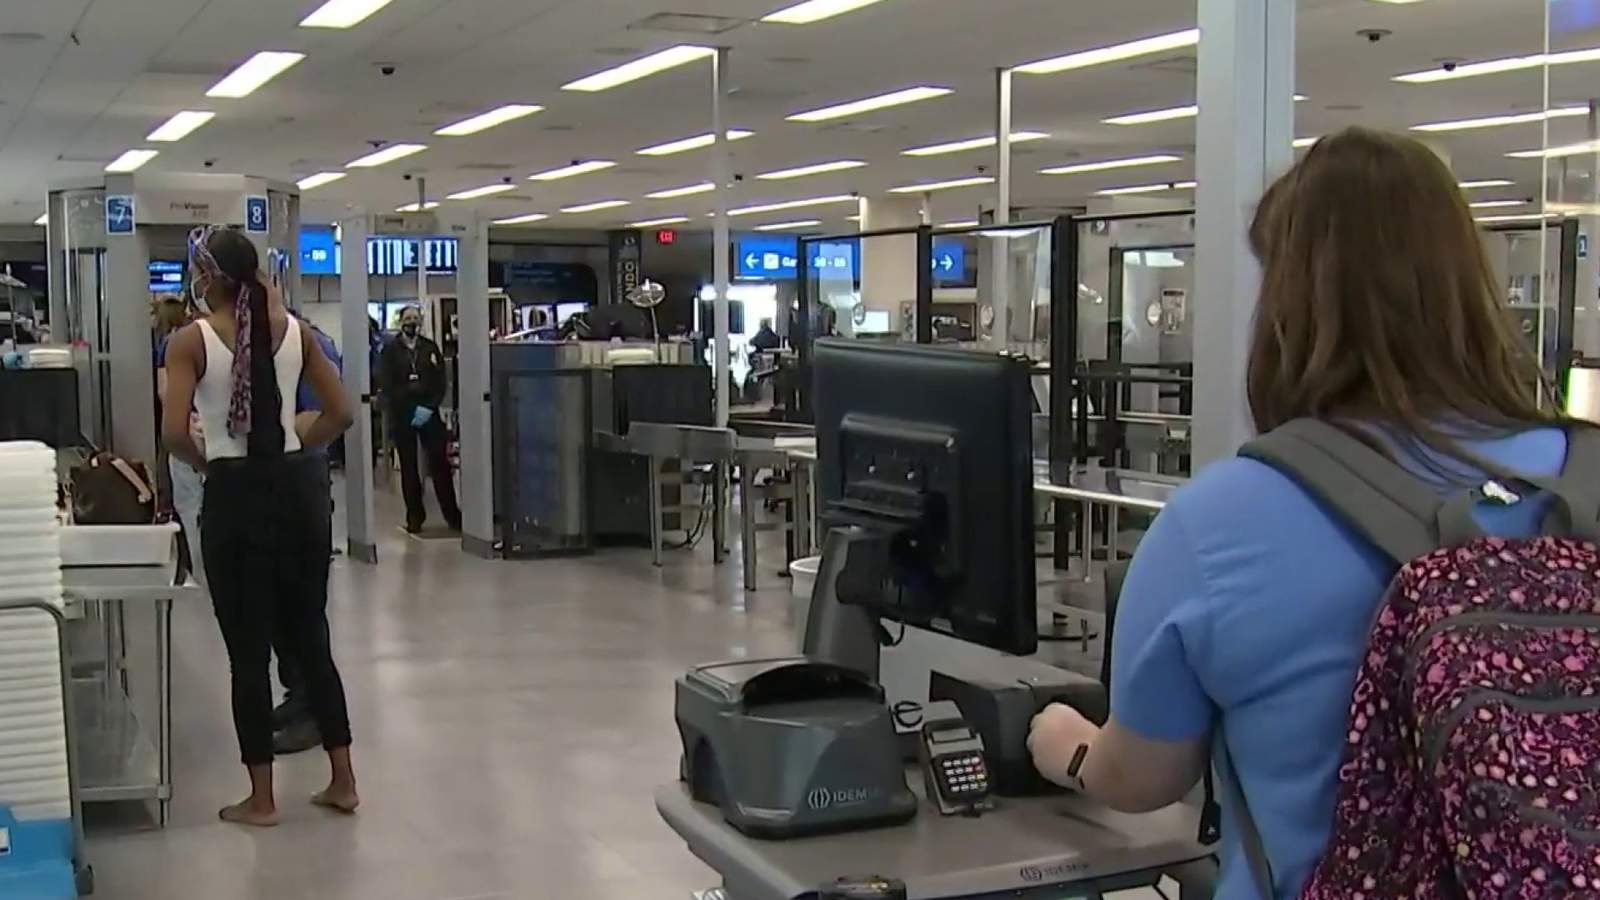 Orlando International Airport debuts new TSA security equipment for coronavirus